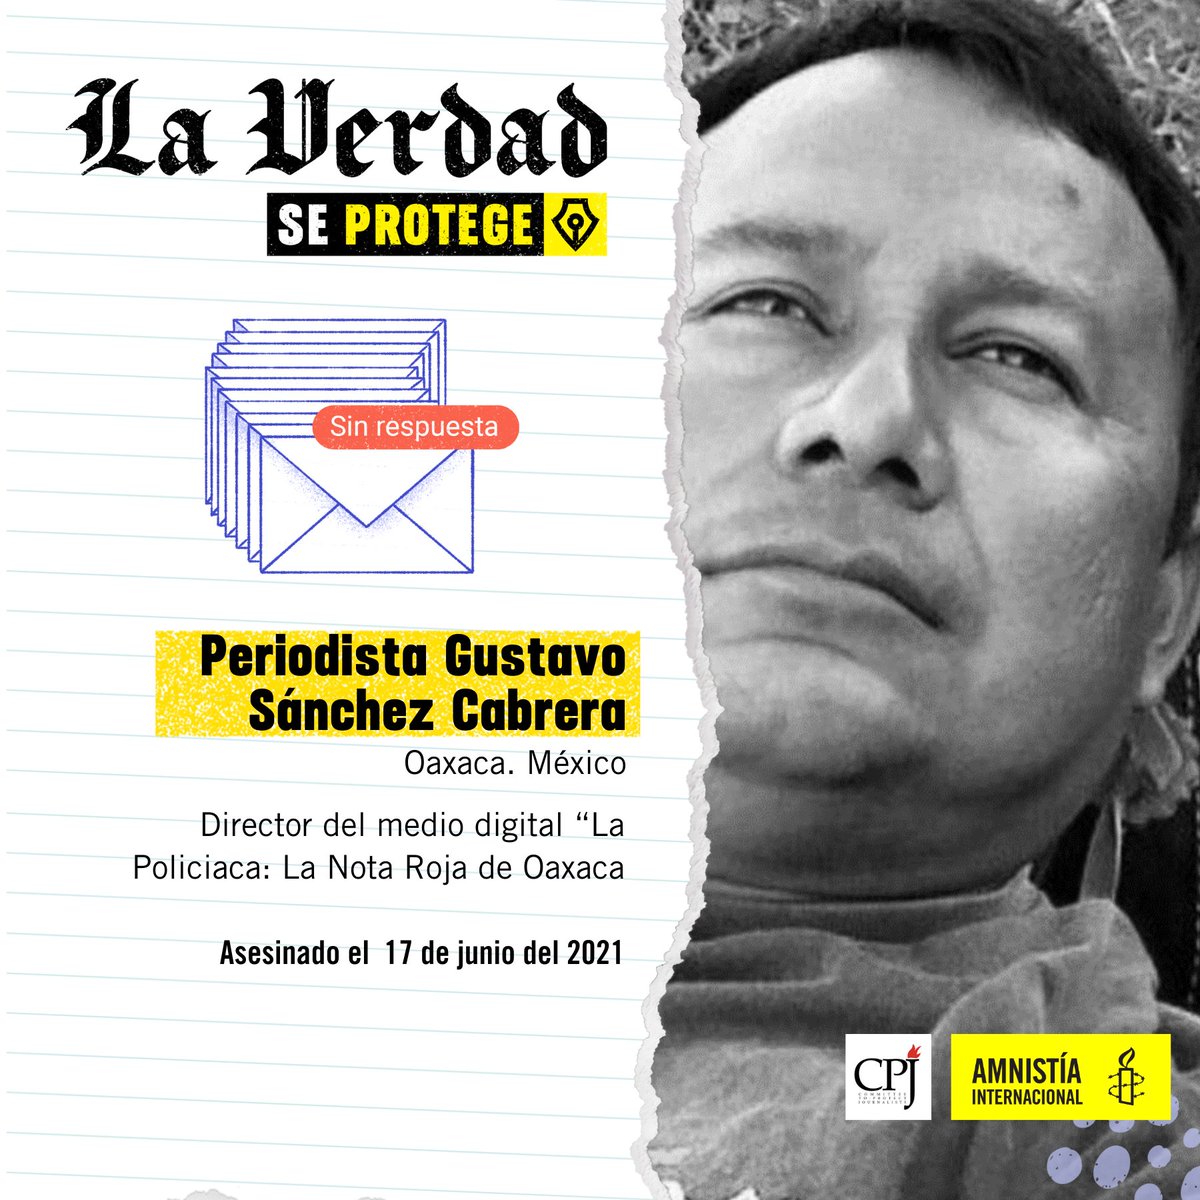 🔴 Conoce el caso de Gustavo Sánchez, periodista mexicano asesinado por hacer su labor en #Oaxaca. 📢 ¡No más periodismo violentado! Firma la petición hoy: amn.st/6018ZCQO4 #LaVerdadSeProtege✒ #PeriodismoLibreySeguro🗞